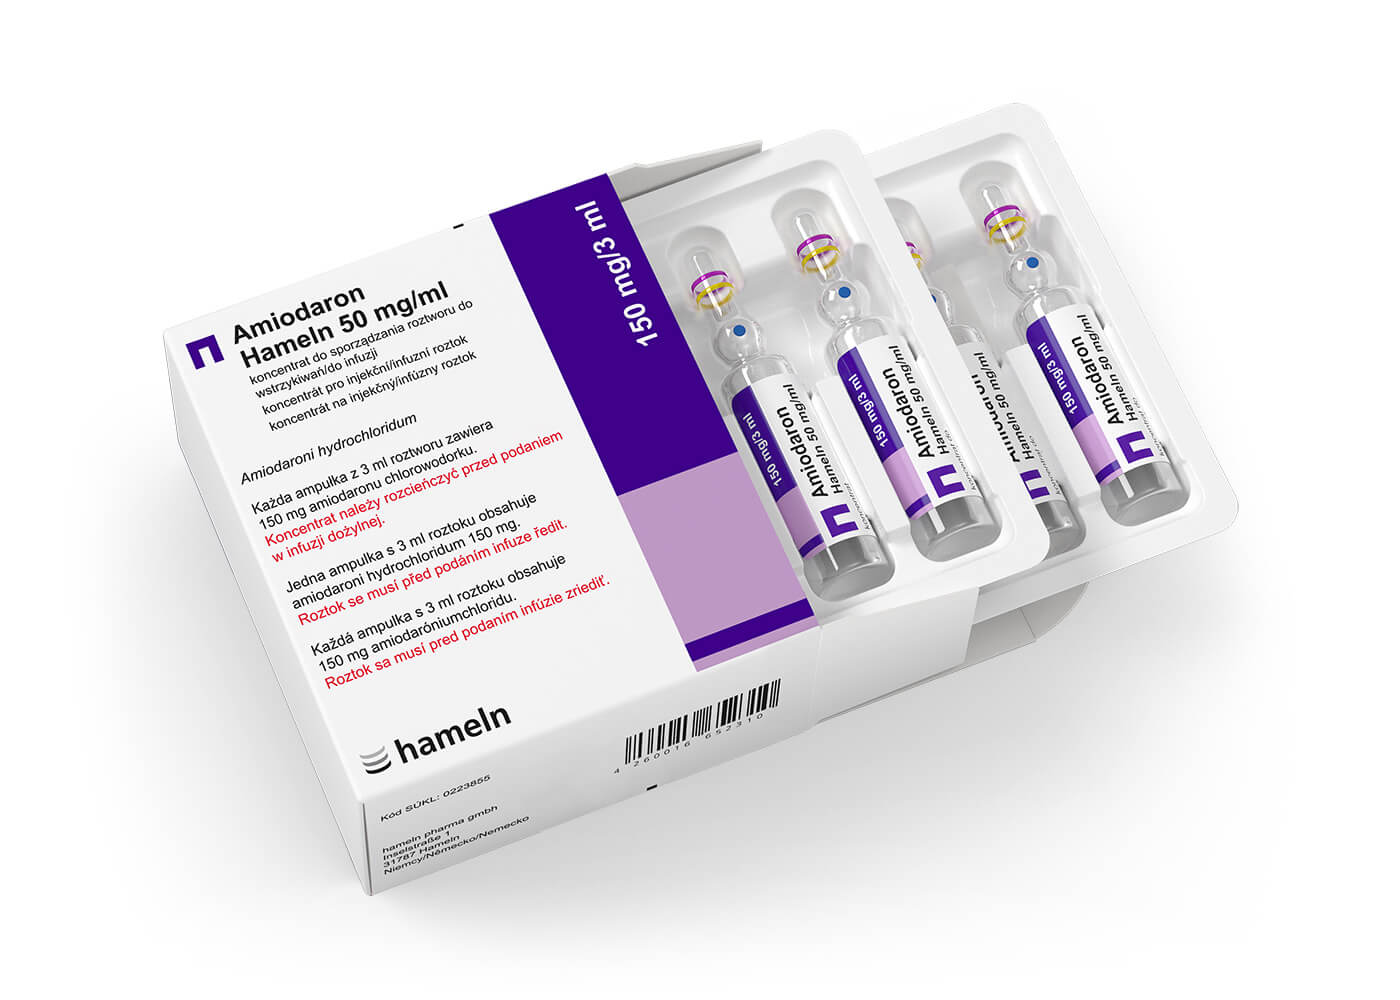 Amiodaron_PL-CZ-SK-150-mg-in-3-ml-Pack+Amp_10St_Mefar_2021-27